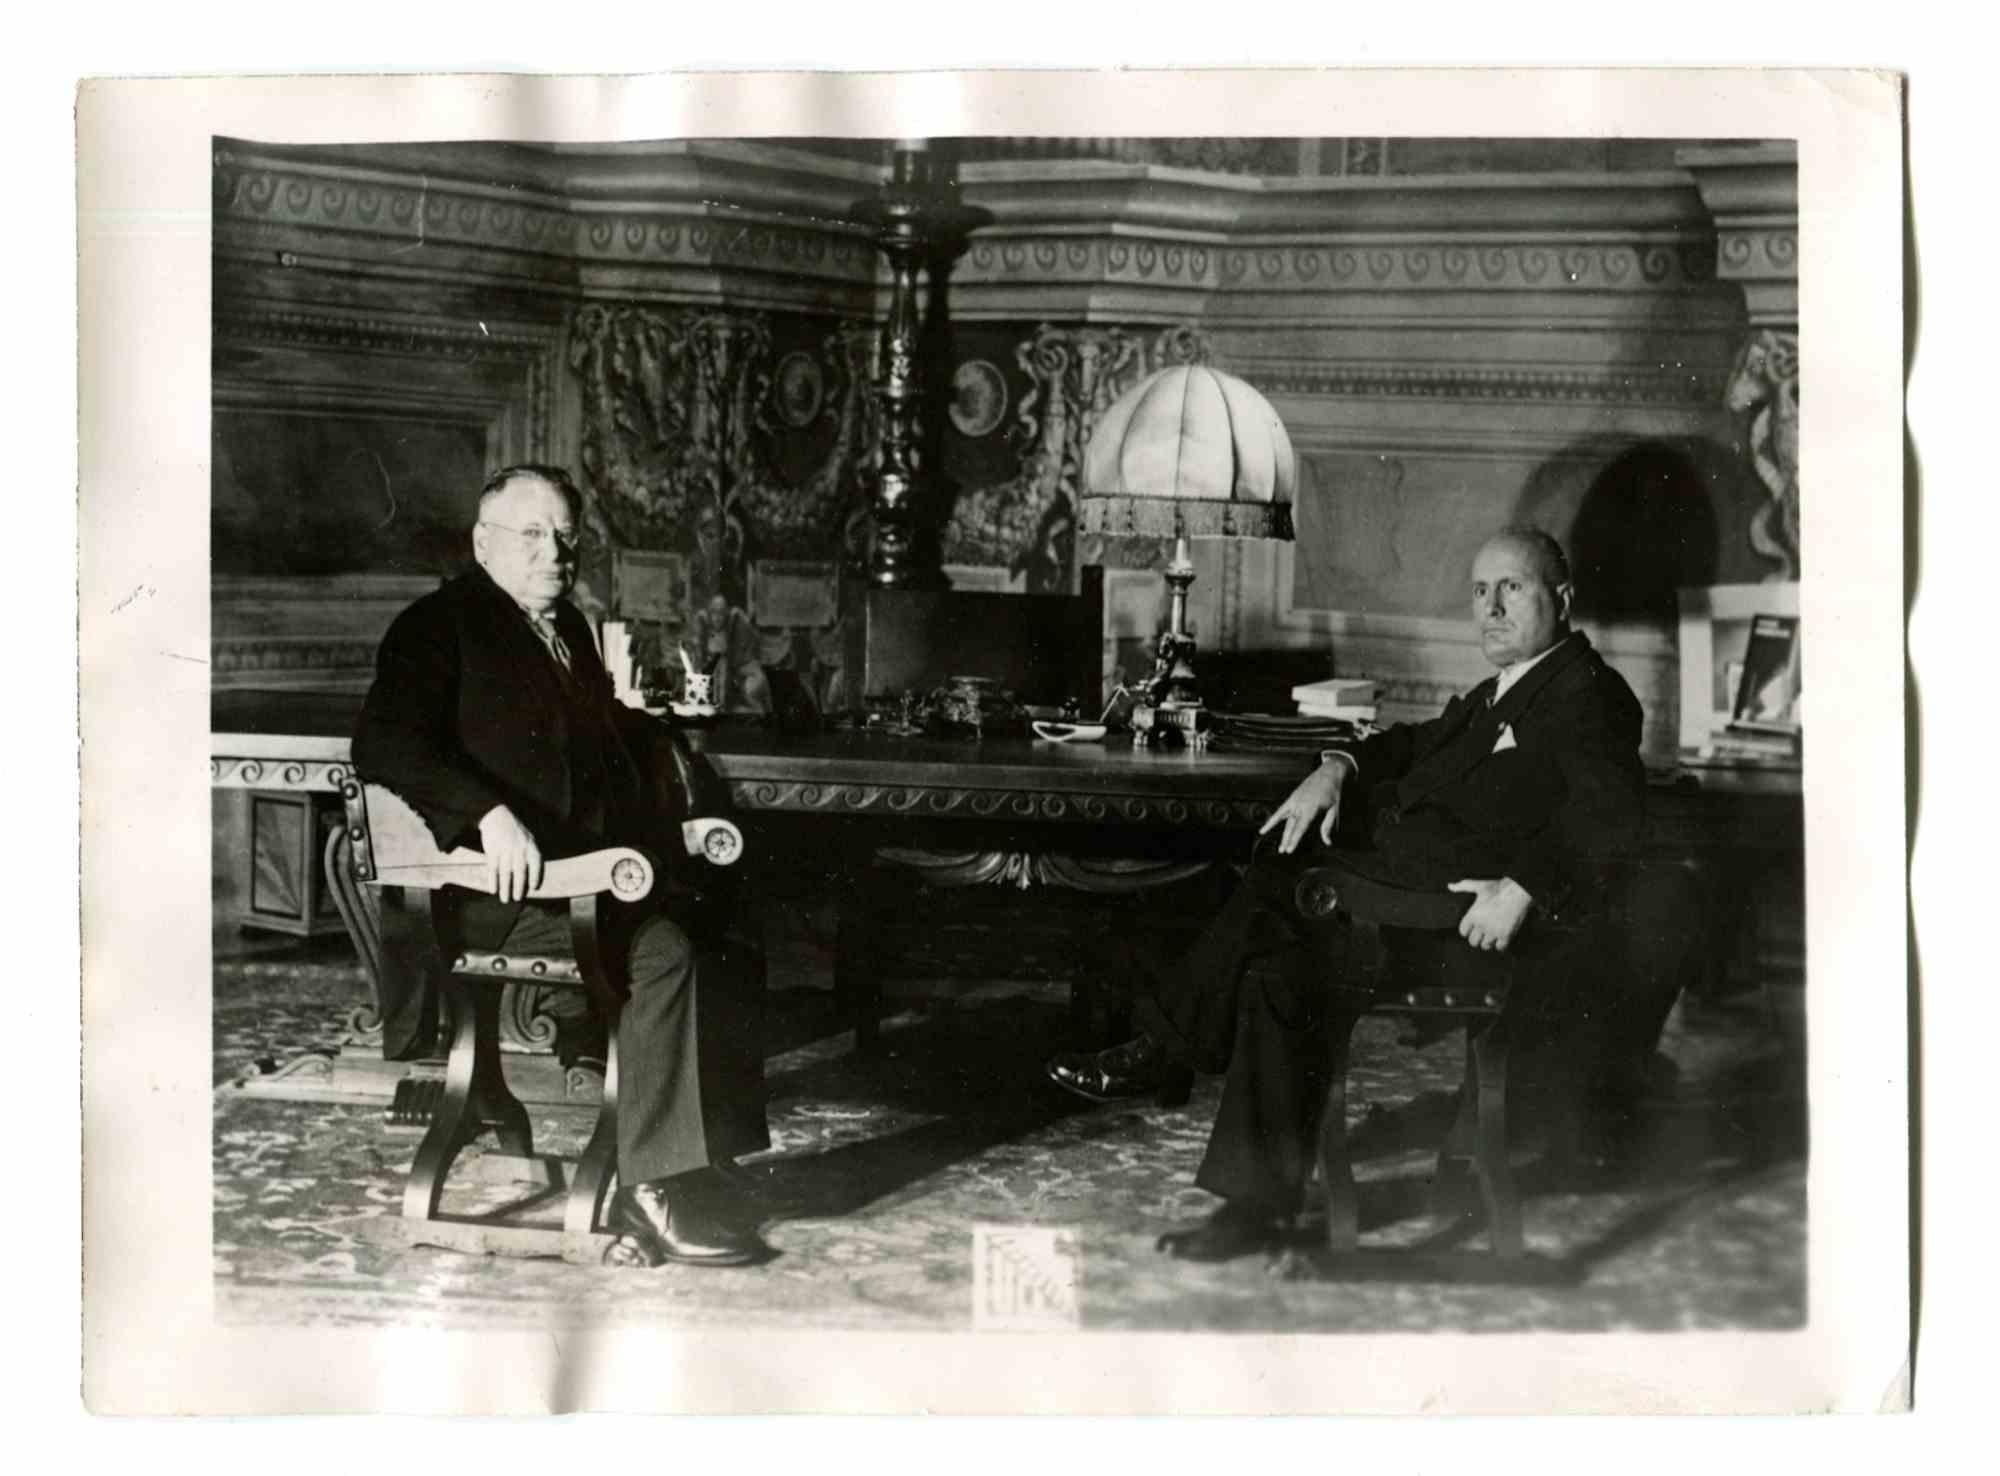 Figurative Photograph Unknown - Époque du Fascisme italien - rencontre de Mussolini et Litvinoff - Photo vintage - années 1930